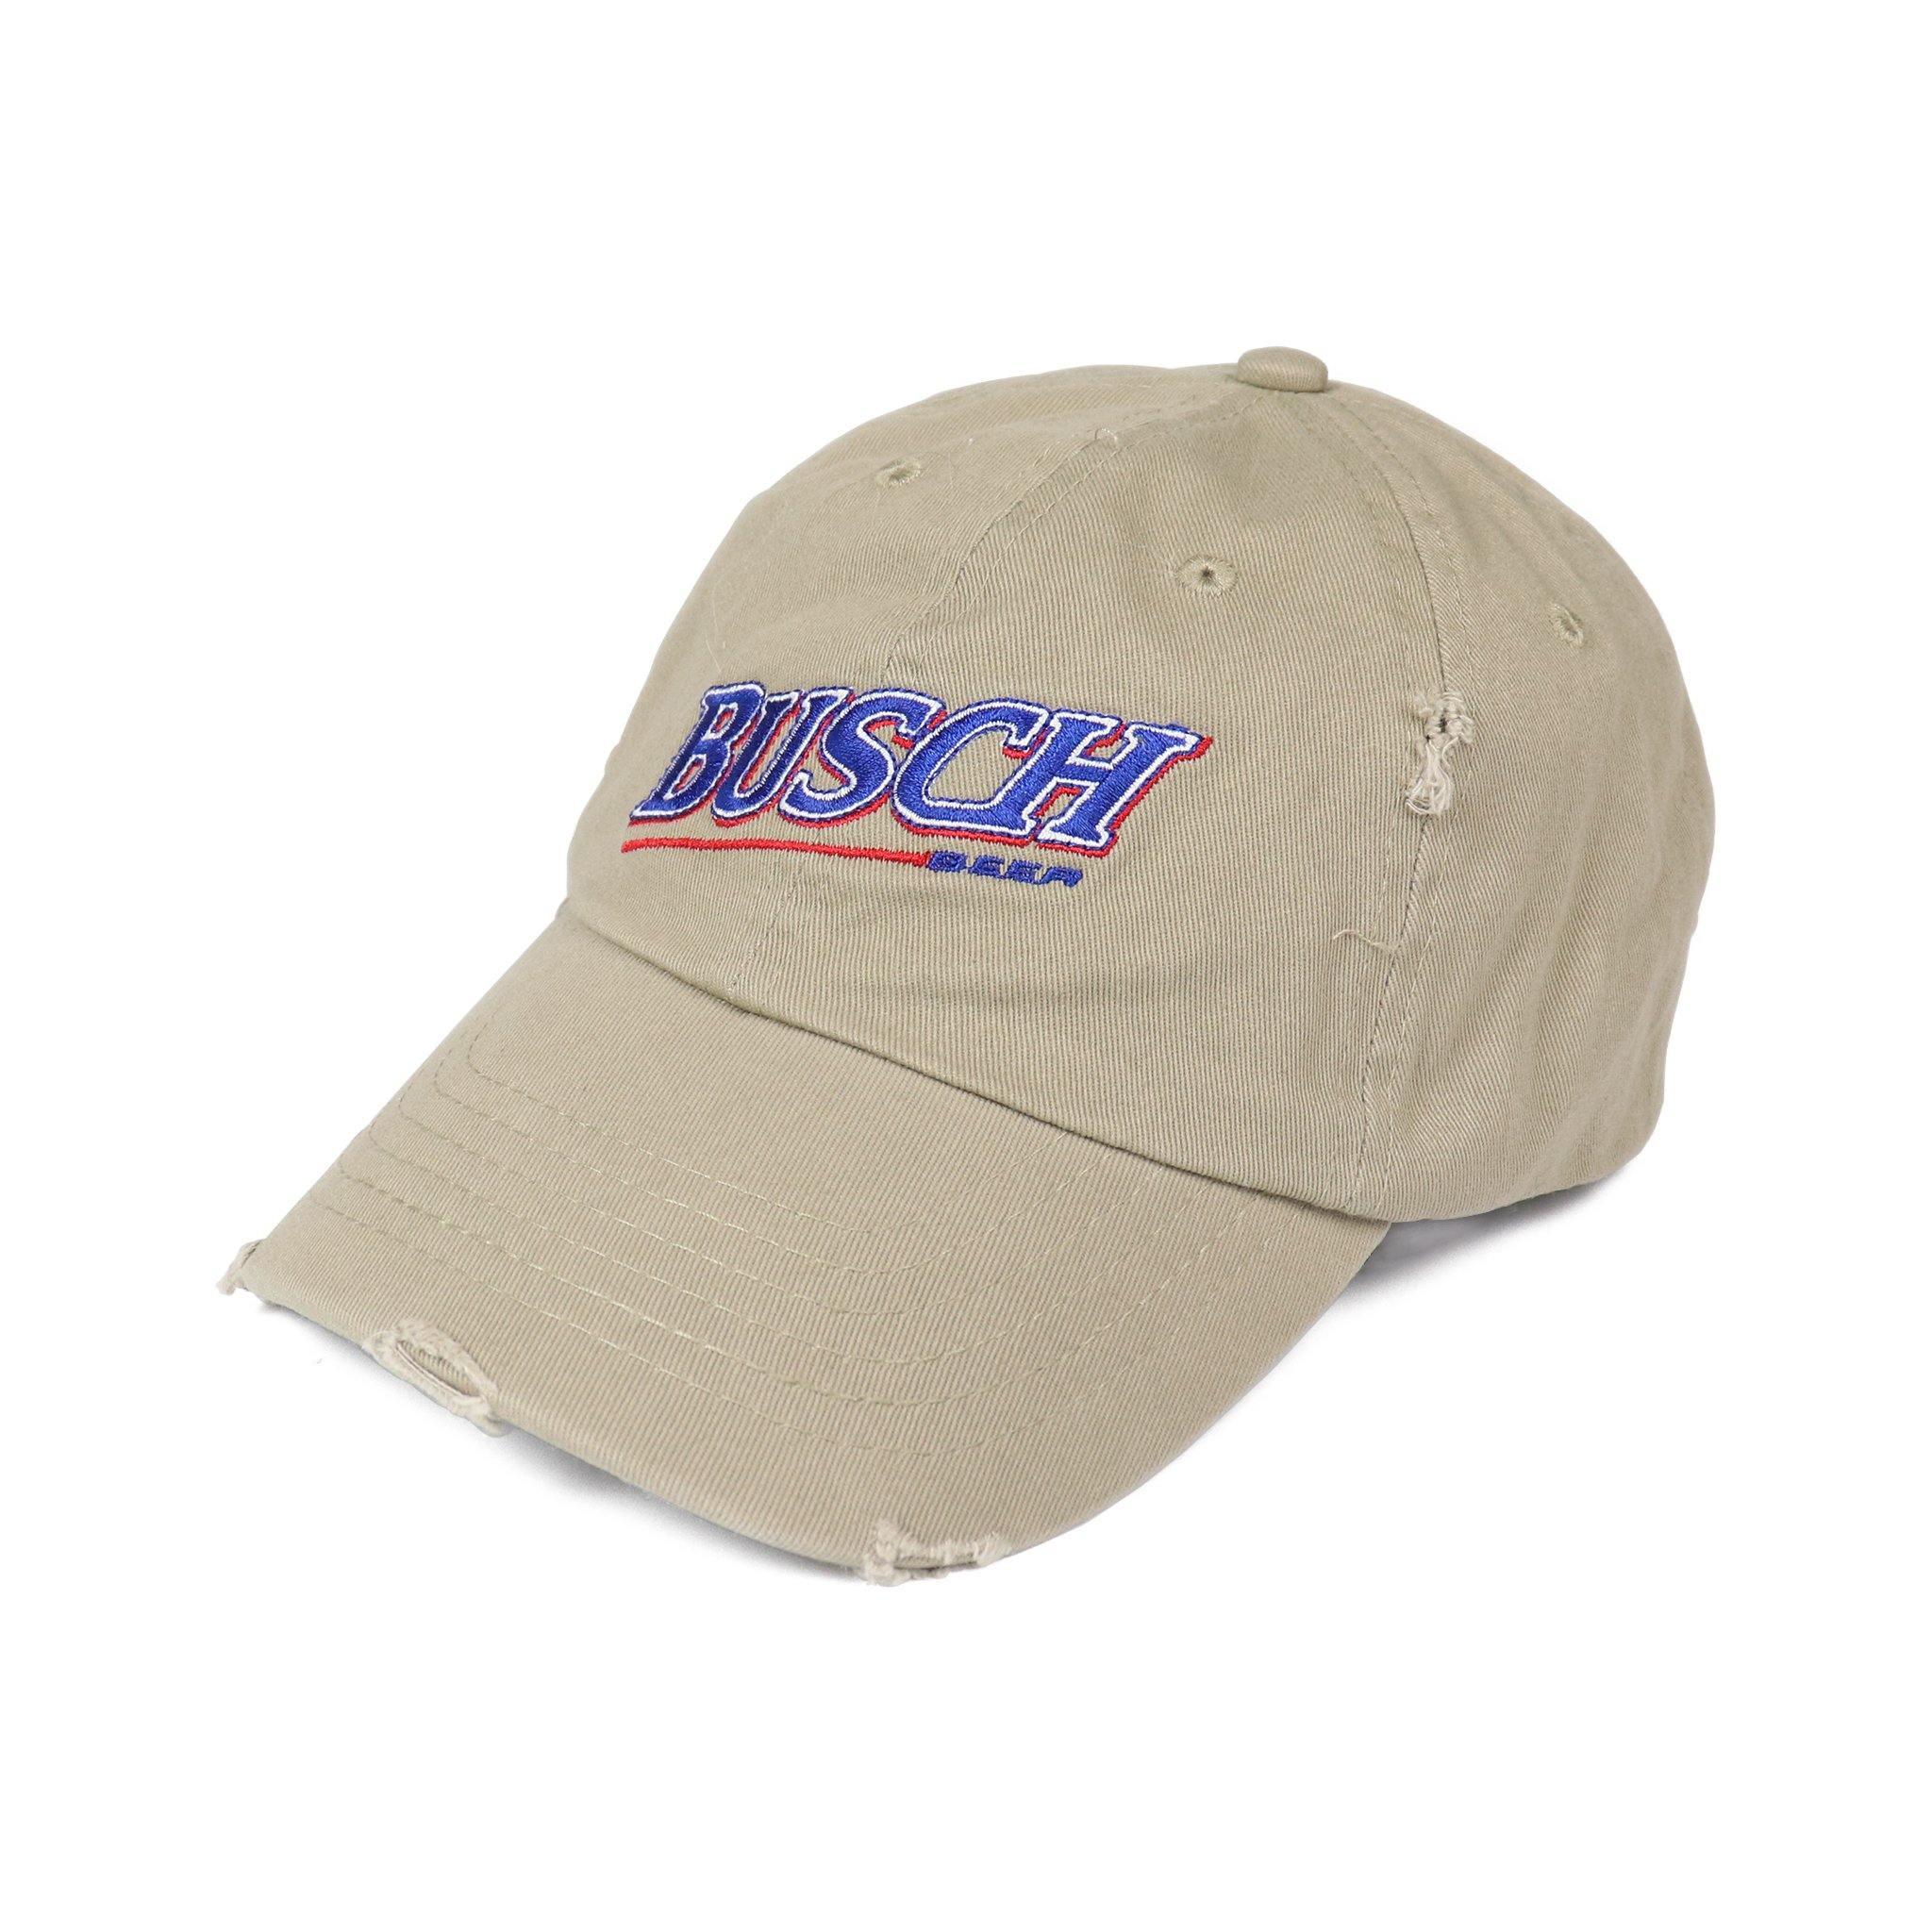 Busch Vintage Fishing Hat